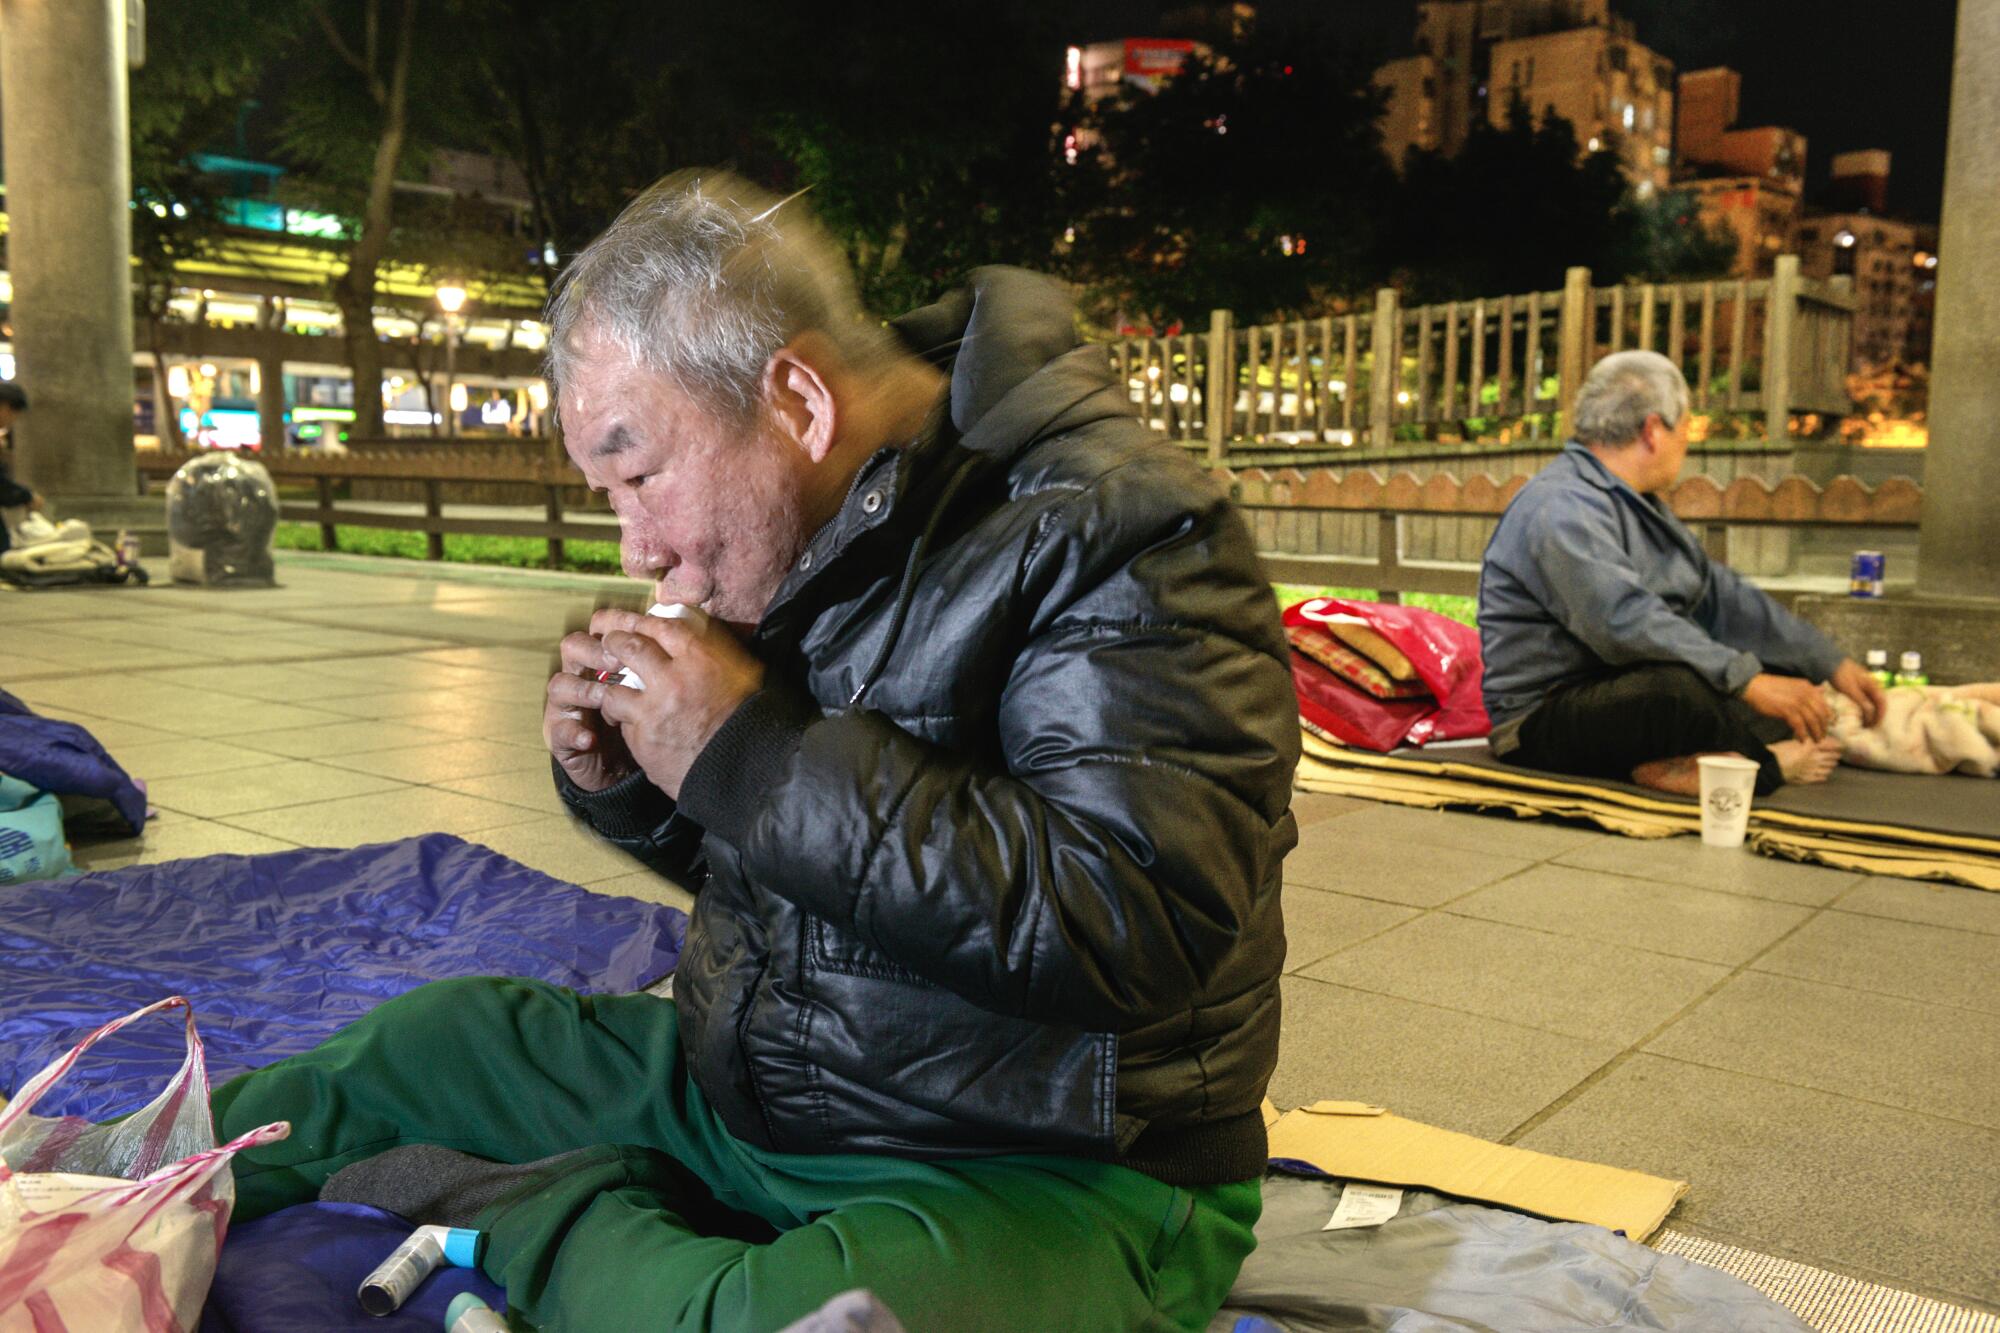 Hsu Chong-chi, 64, uses an inhaler for his asthma before bedtime at Taipei's Bangka Park.